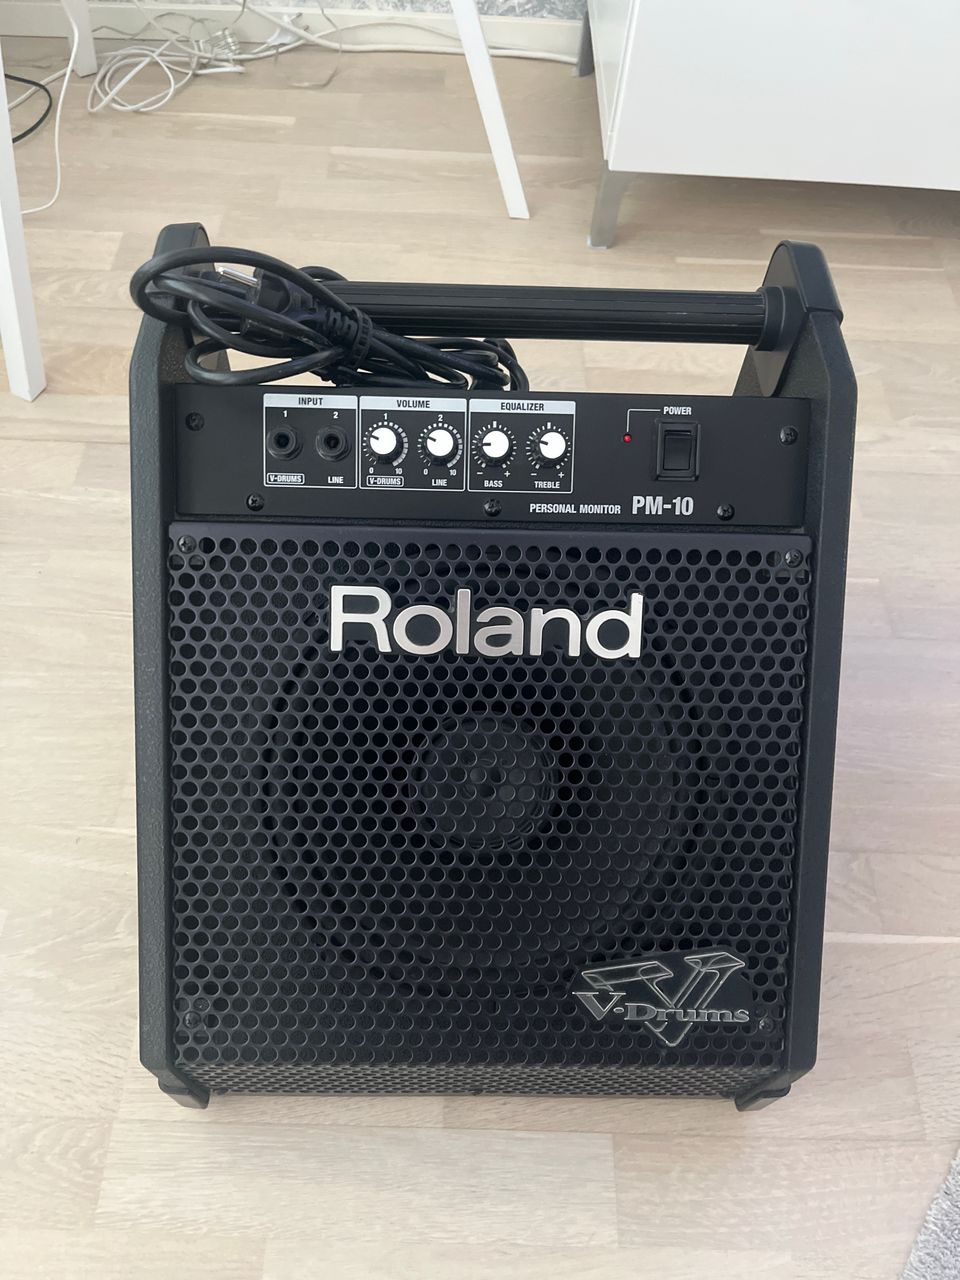 Roland PM-10 monitori